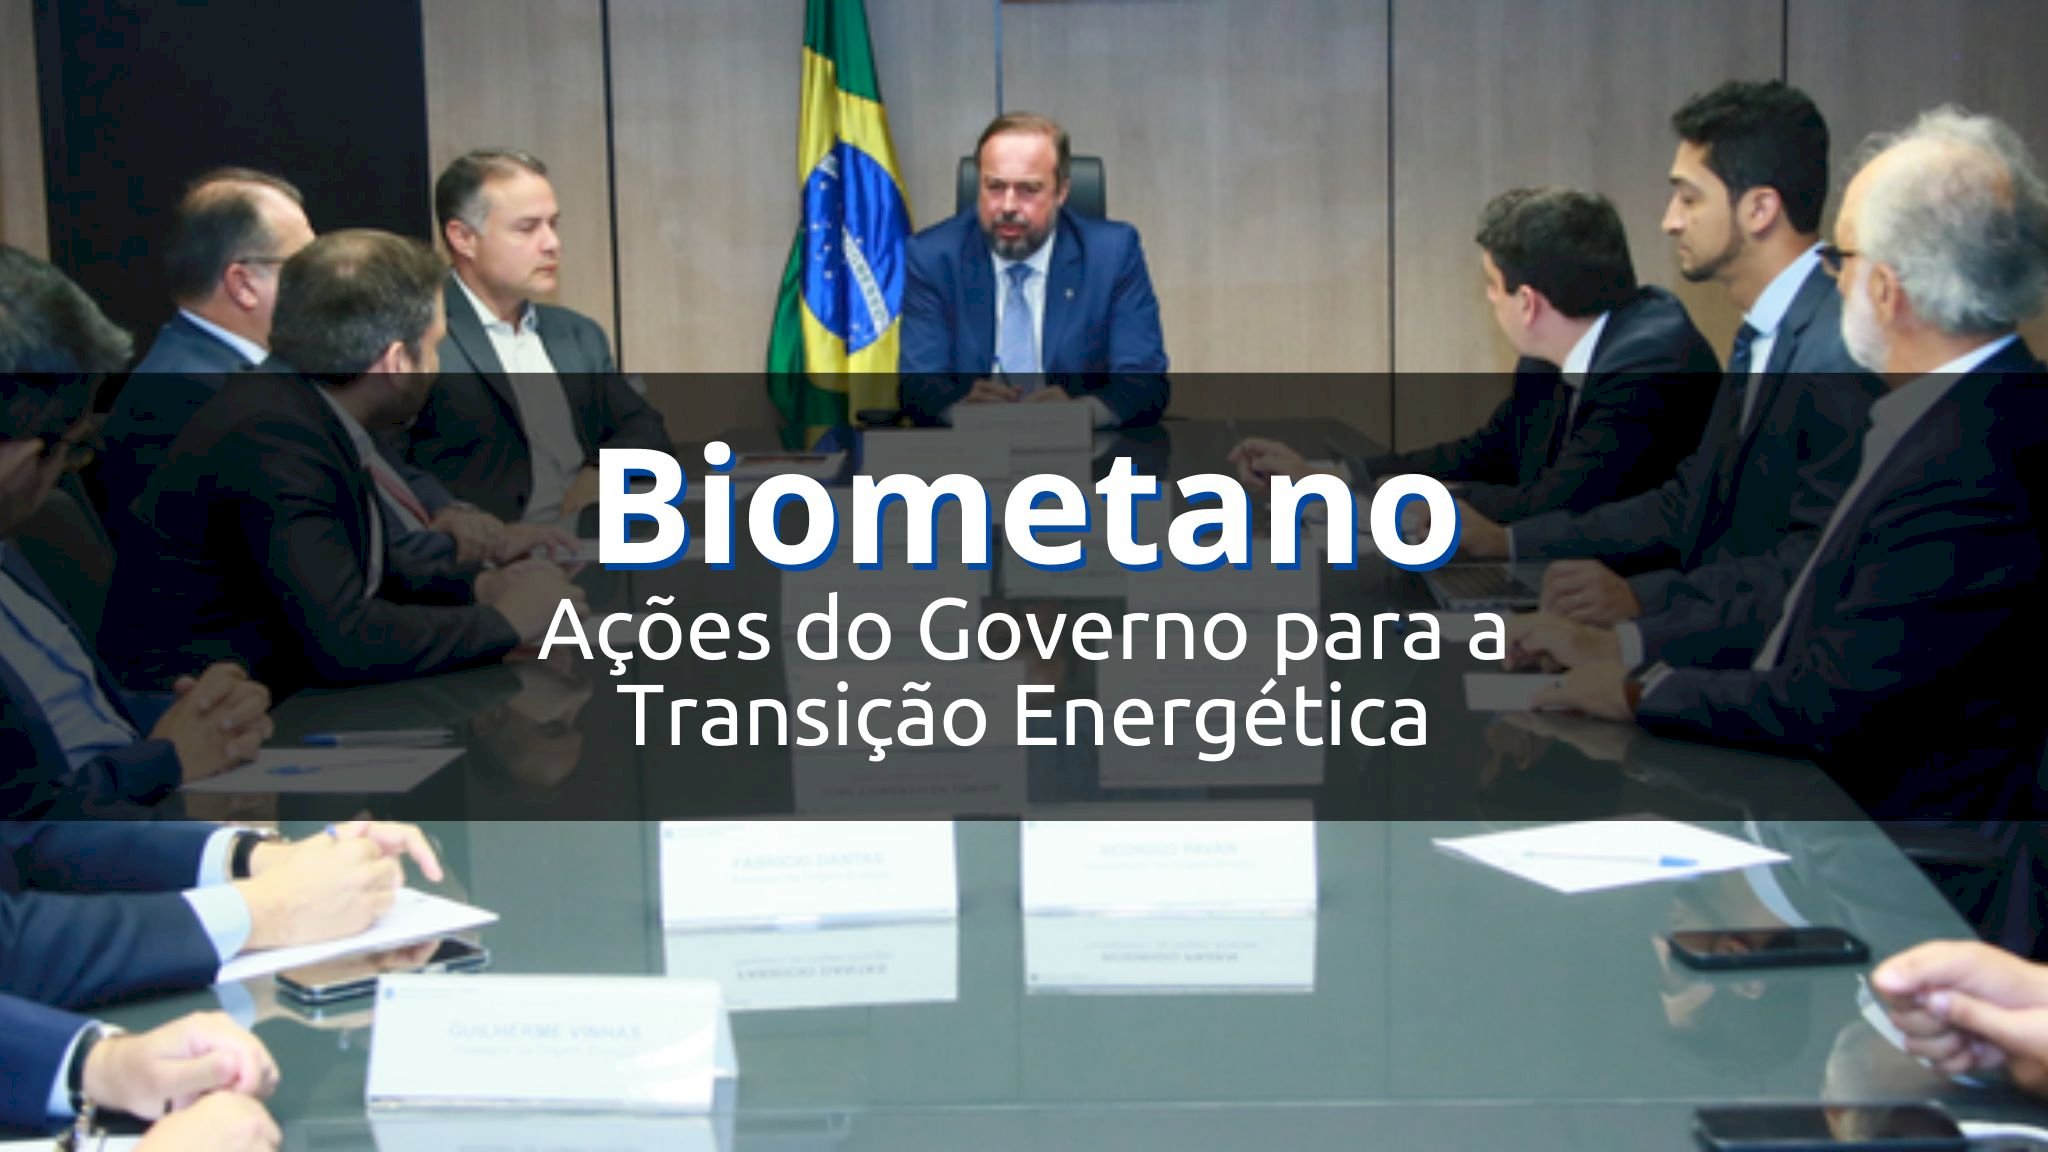 Biometano: uma das apostas do governo brasileiro para reduzir a poluição no transporte